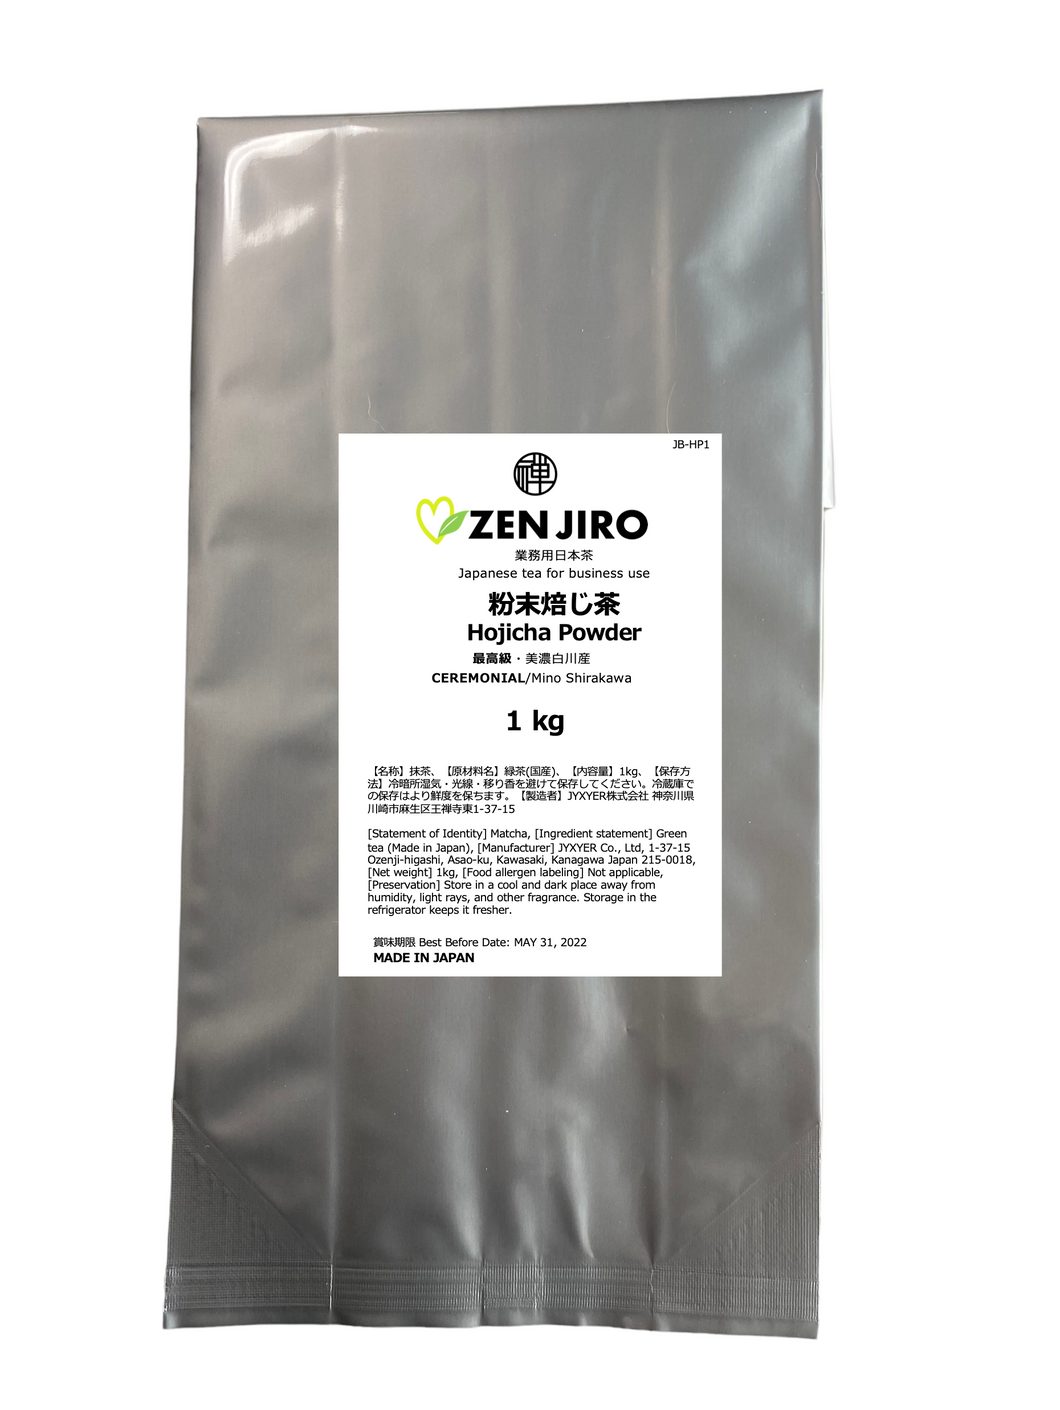 ZENJIRO 粉末焙じ茶 美濃白川 セレモニアル 1 kg